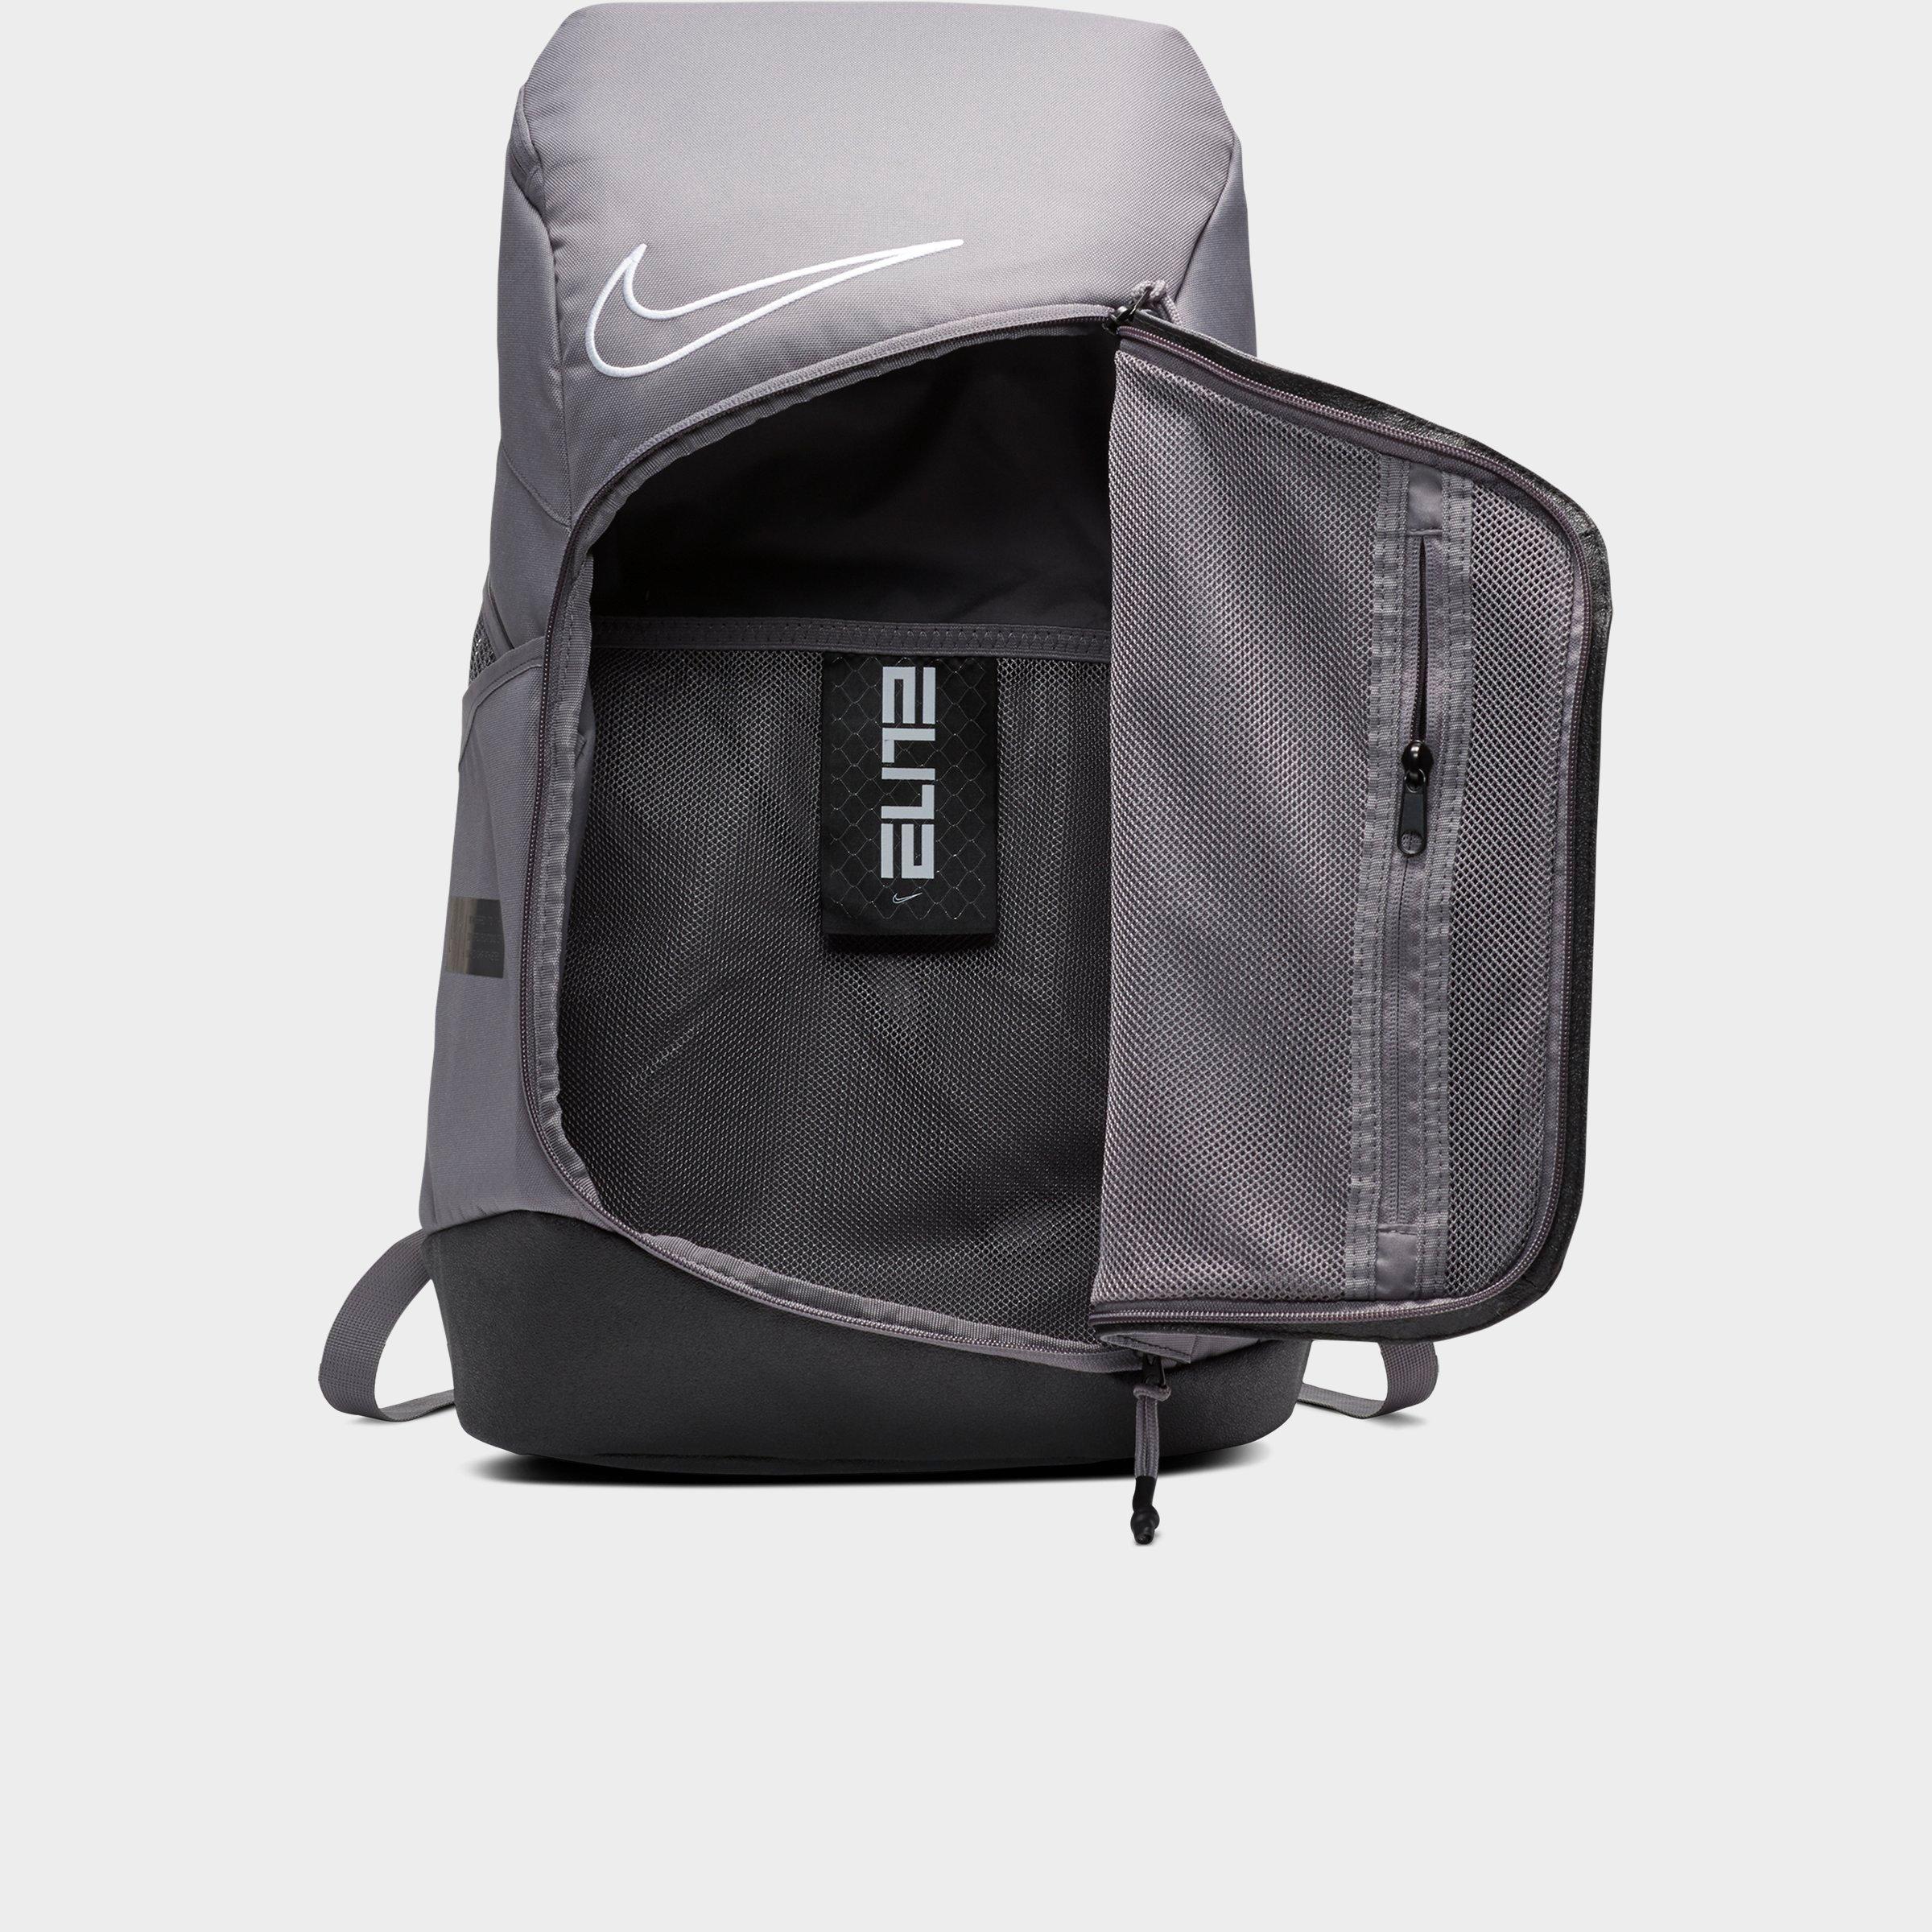 nike elite backpack $40